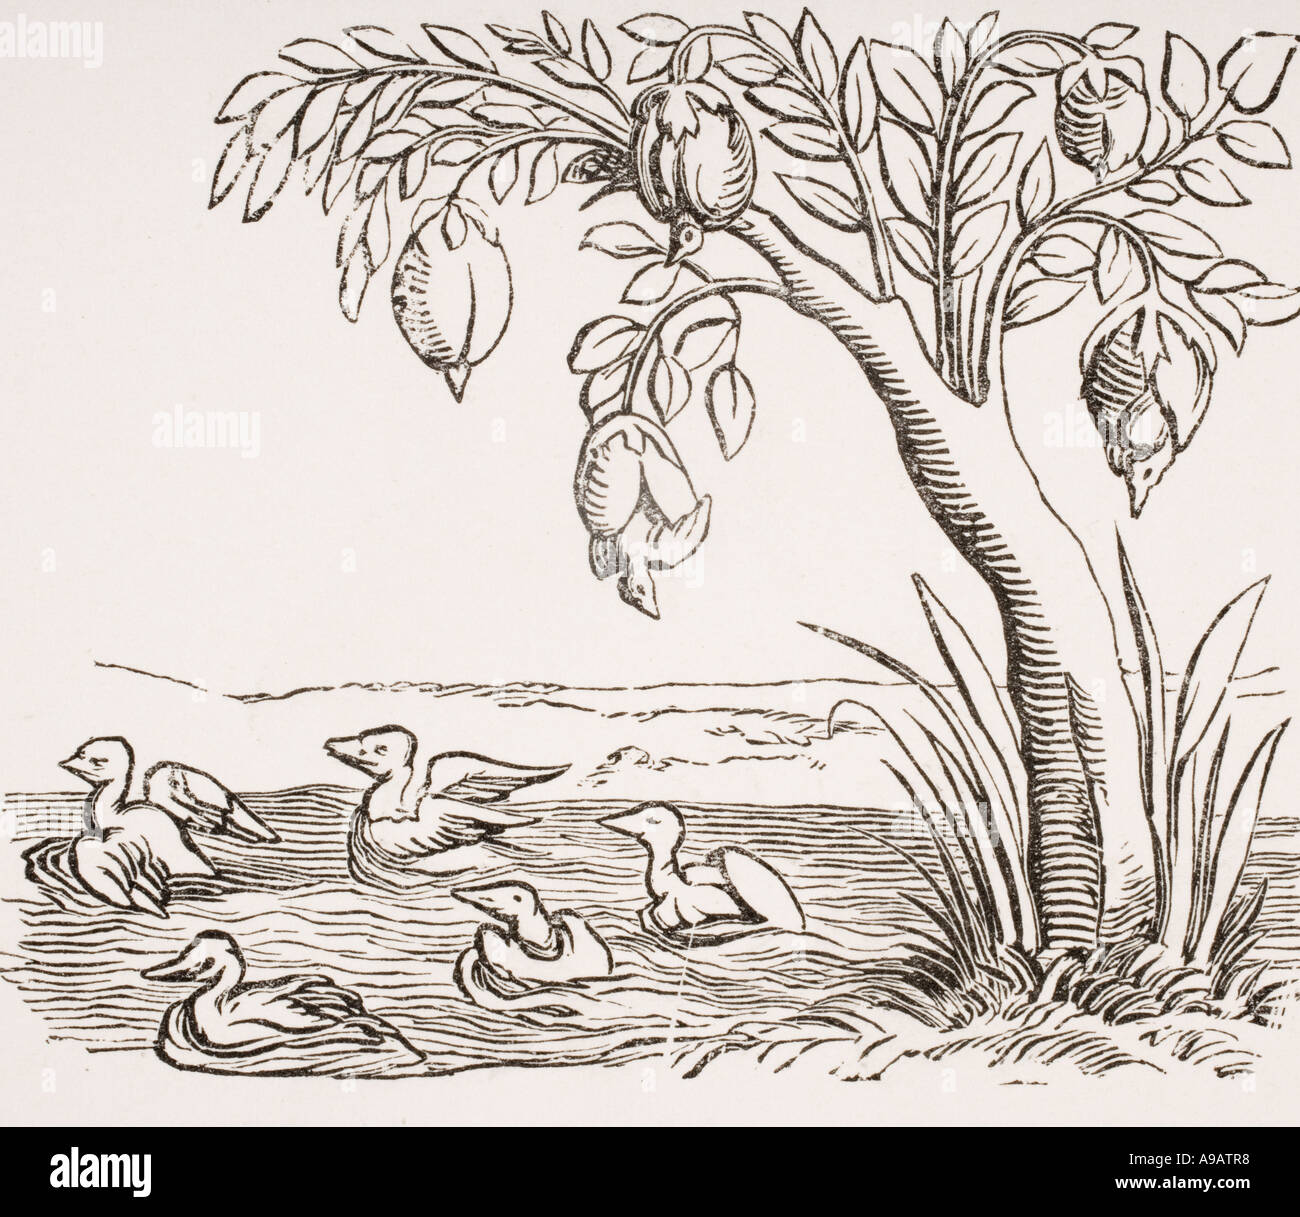 La Bernache nonnette illustrant la légende que ces oiseaux sont passés de balanes attaché à bois exposés à l'eau salée Banque D'Images